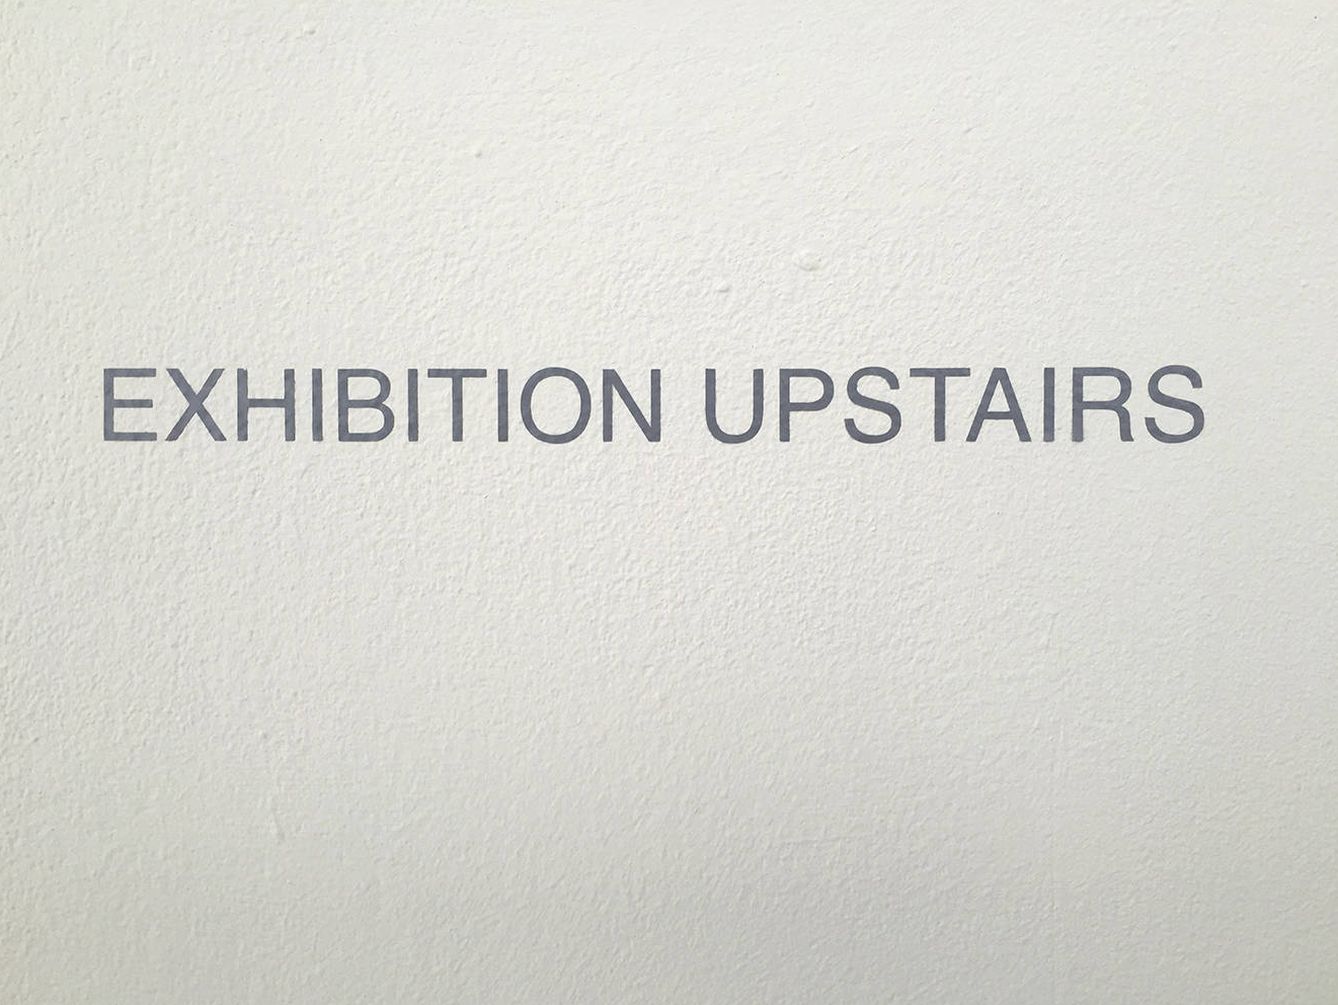 Ignasi Aballí. 'Rótulo (Exhibiton upstairs)', 2017.